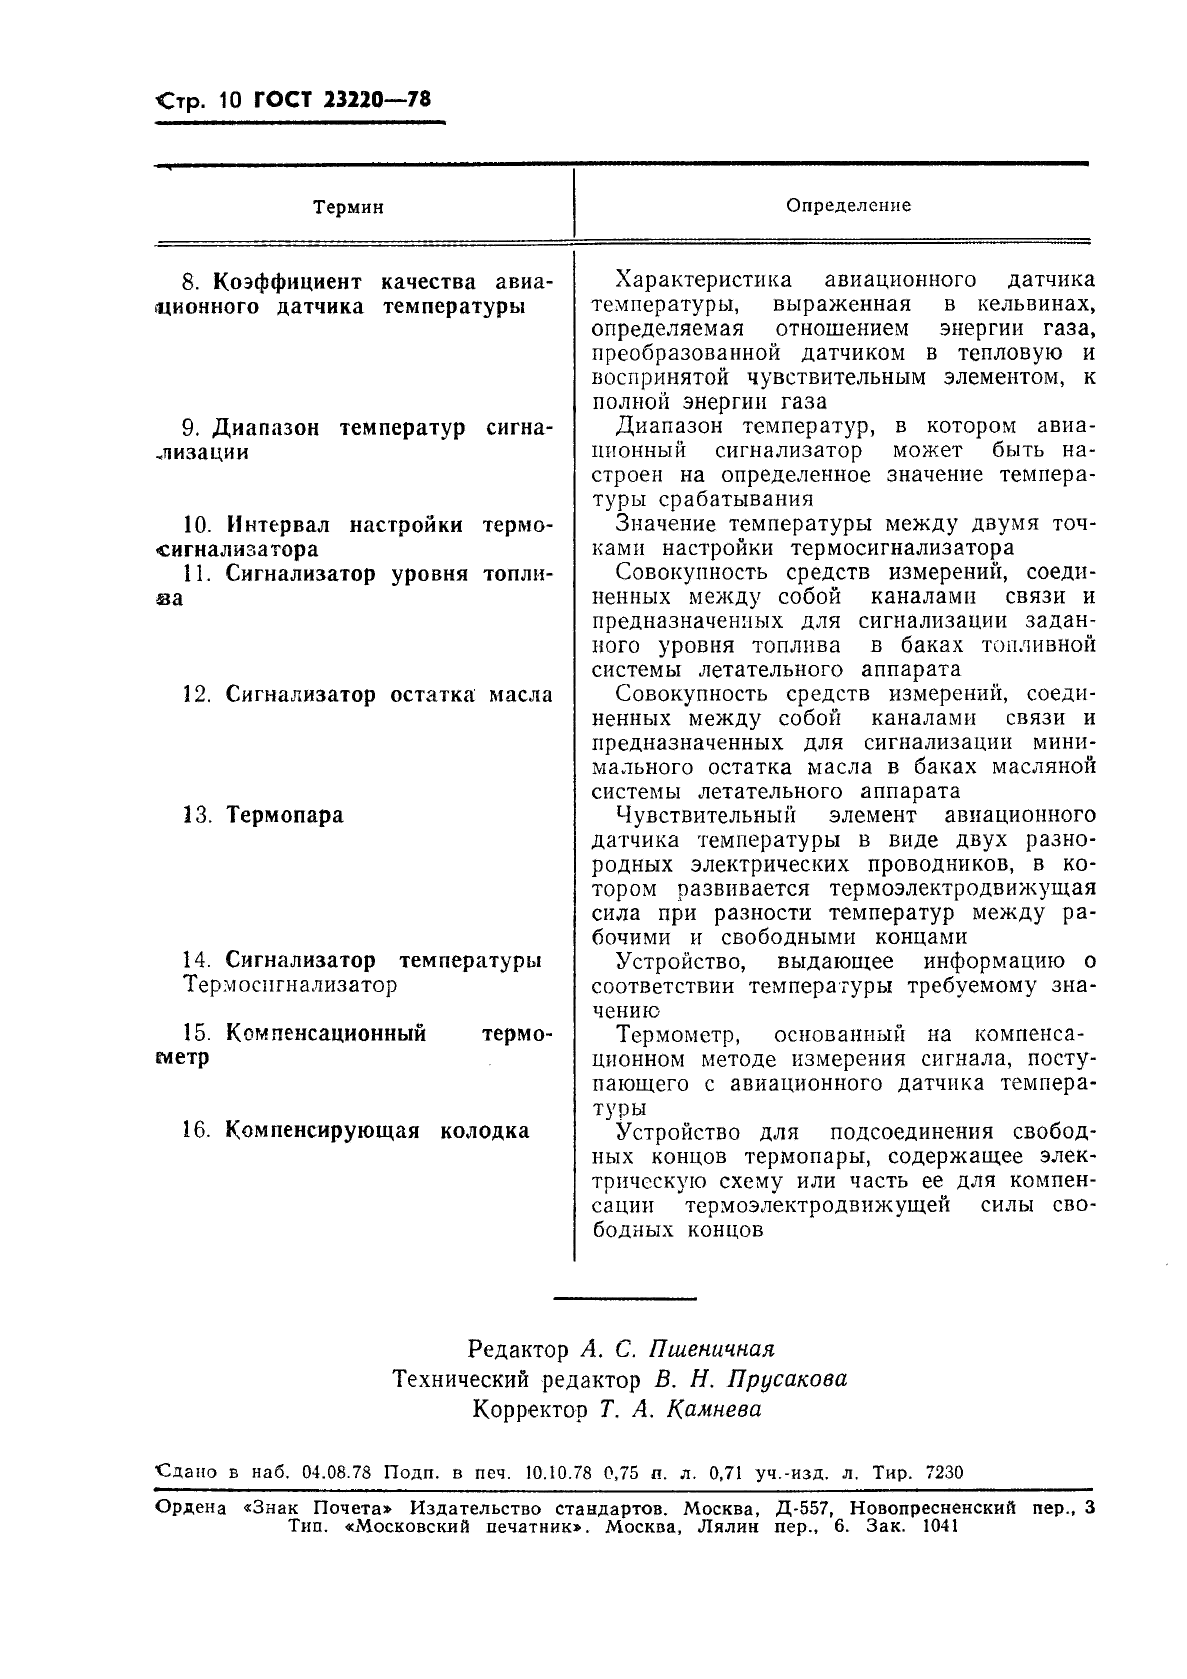 ГОСТ 23220-78 Средства контроля работы двигателей летательных аппаратов. Термины и определения (фото 11 из 11)